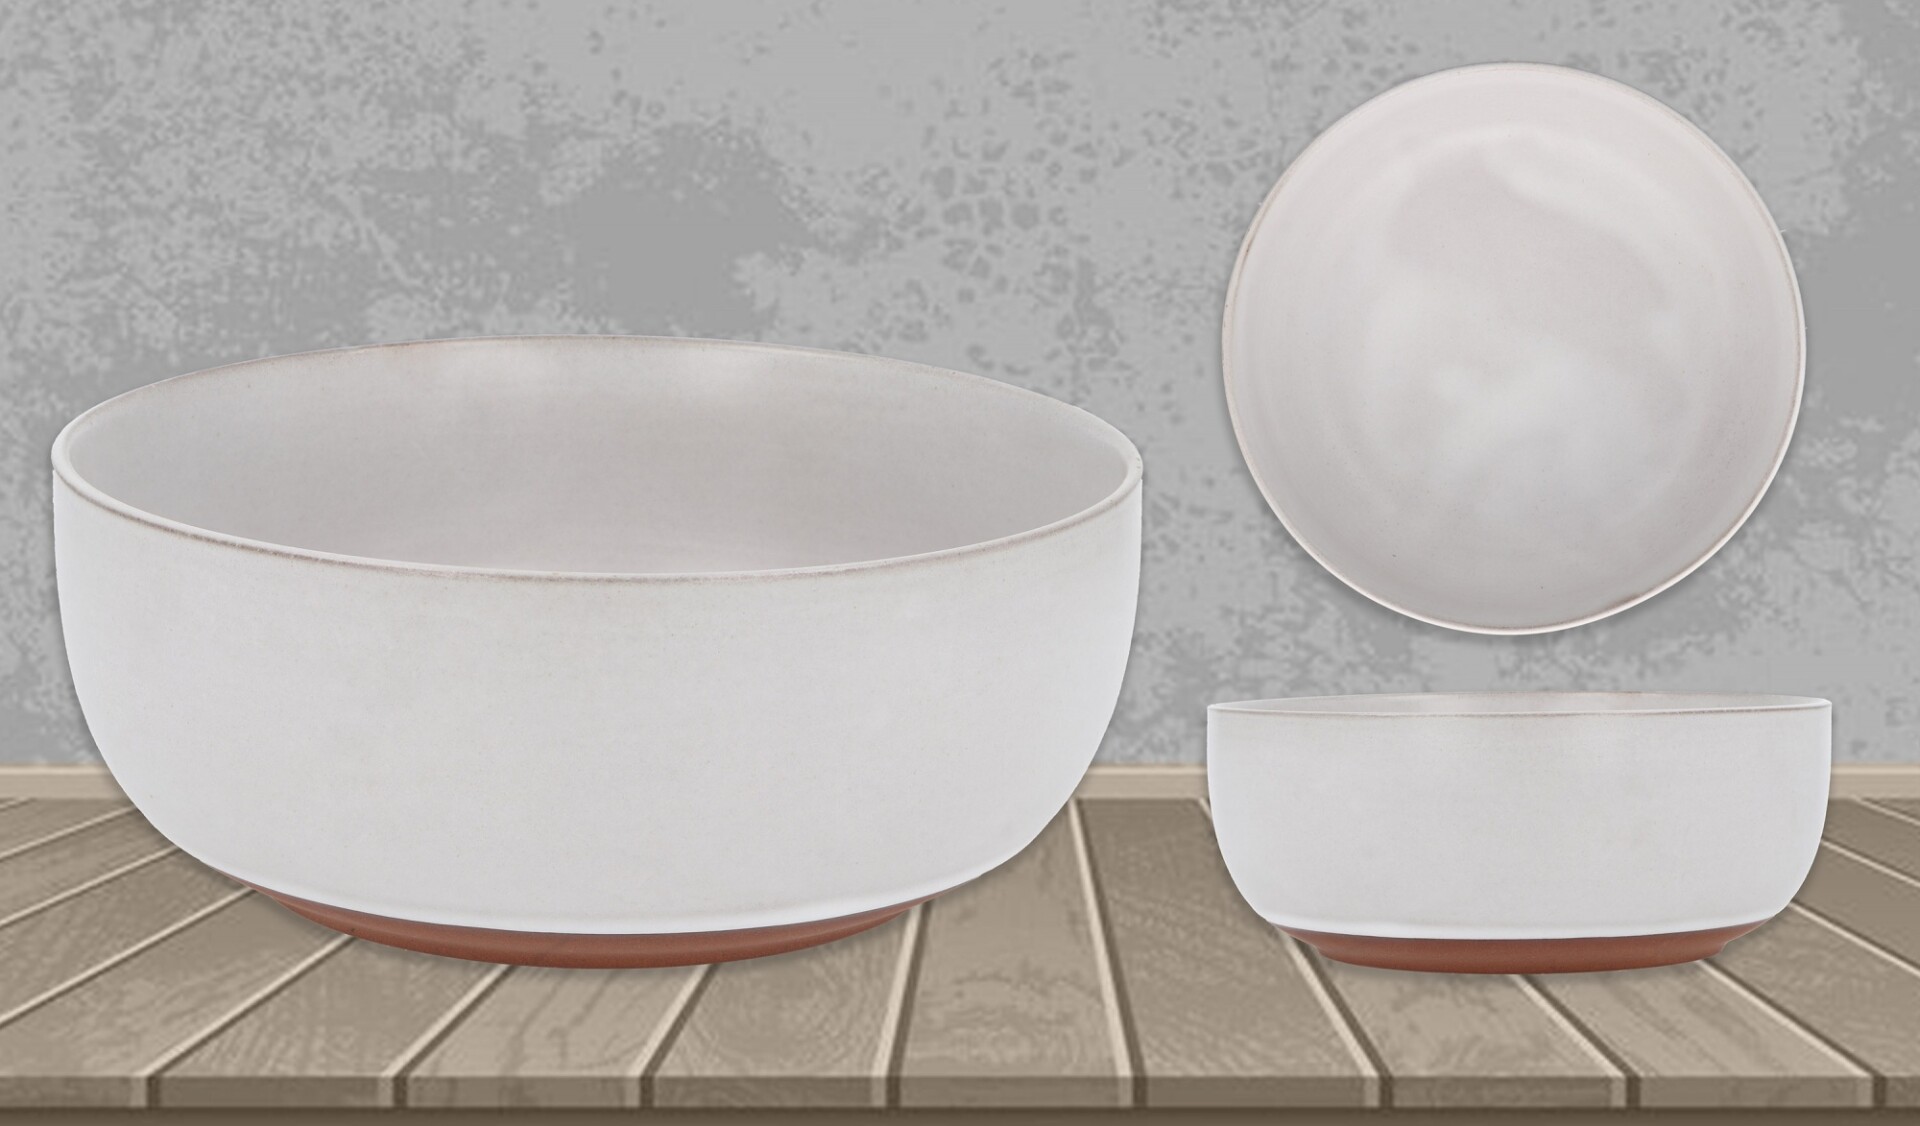 Bowl de ceramica 